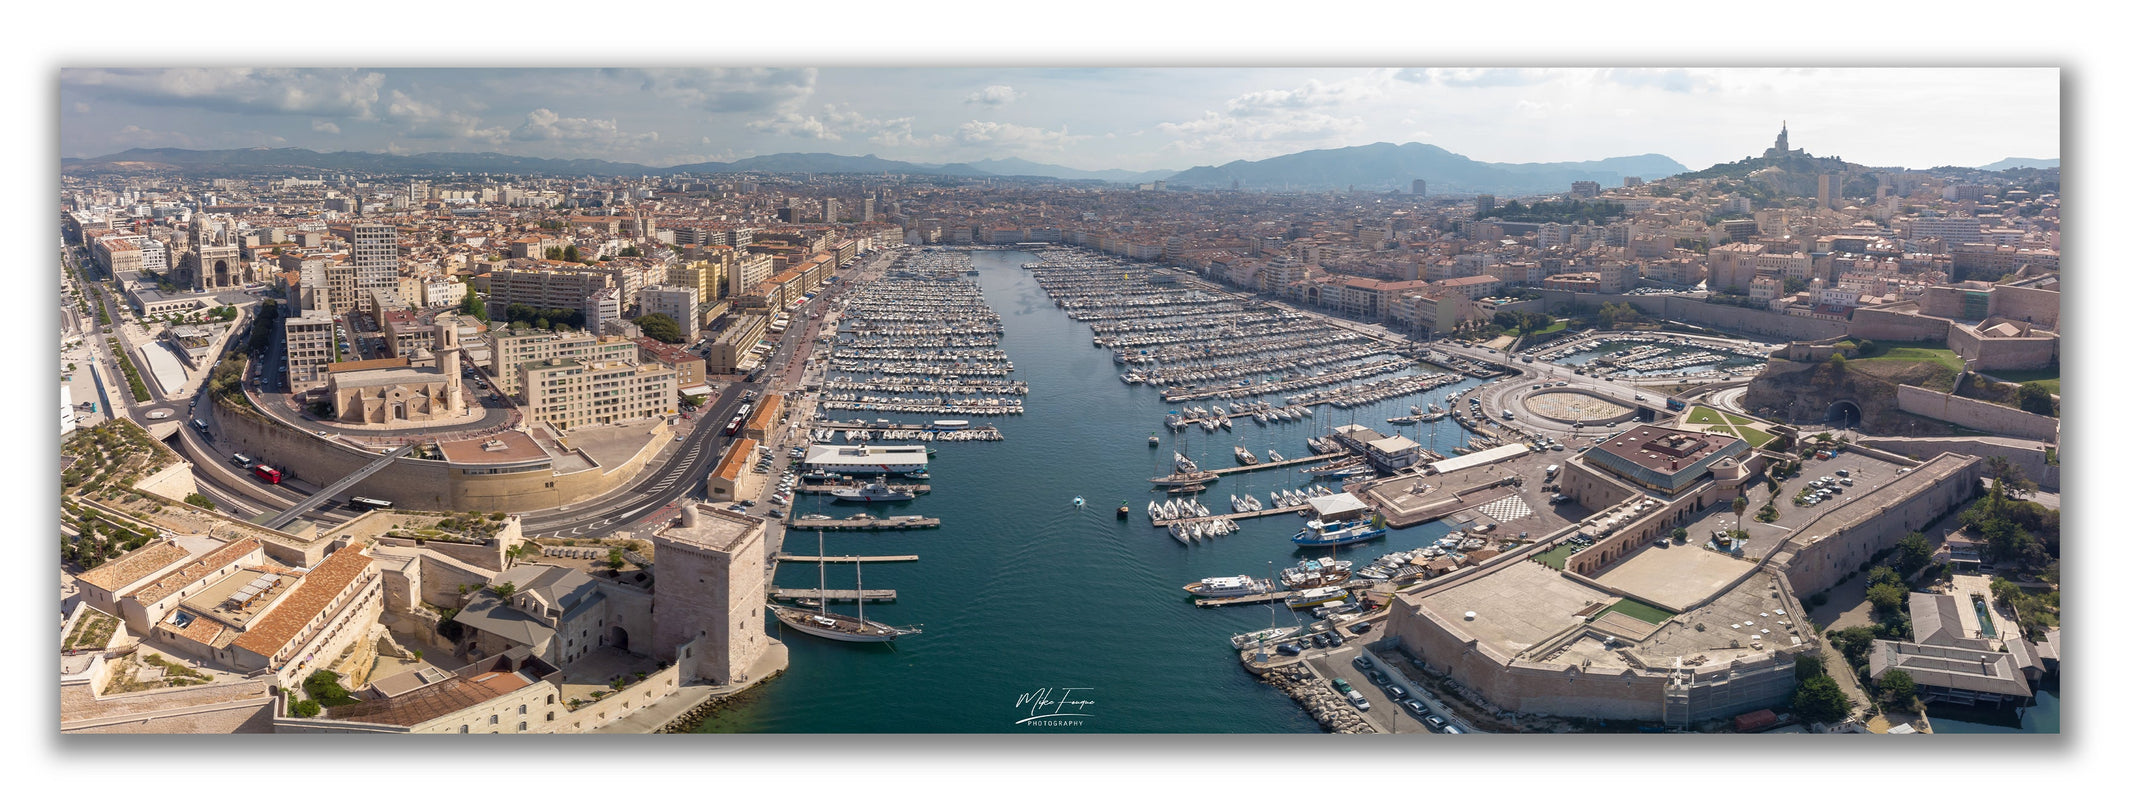 Vieux Port Marseille Vue aérienne panoramique